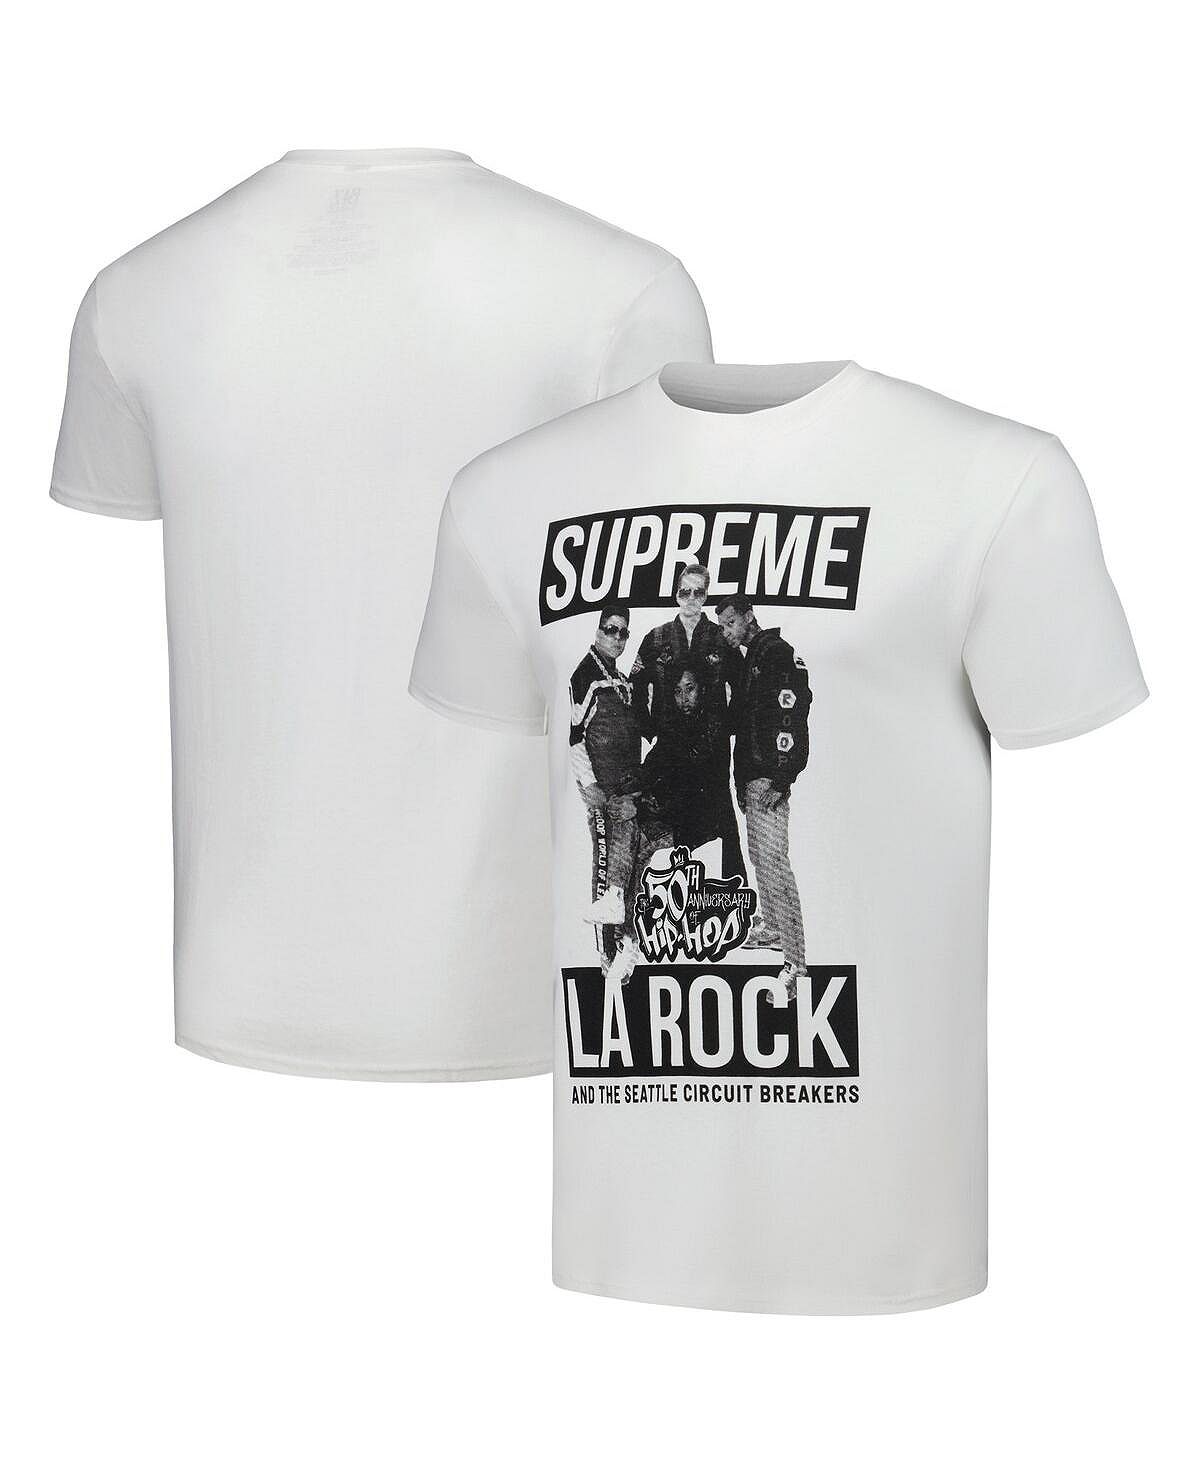 Мужская белая футболка с рисунком 50-летия хип-хопа Supreme La Rock Philcos мужская футболка с изображением виллы джорди виллаверде рок музыки экстремальной музыки музыканта гитары рэпа хип хопа классических т